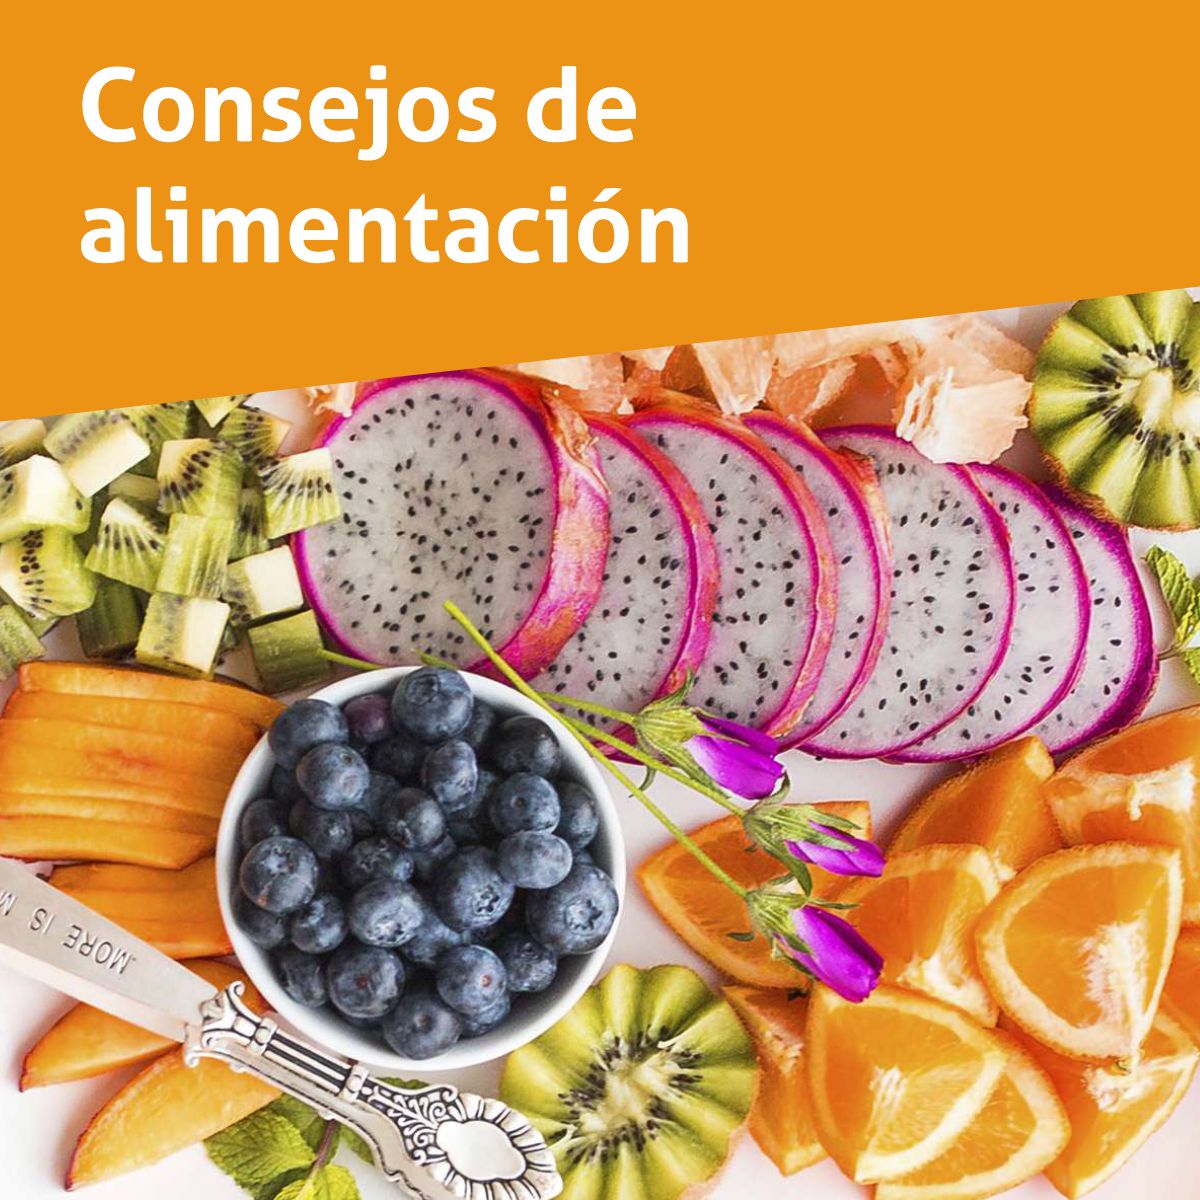 Featured image for “Consejos de alimentación”